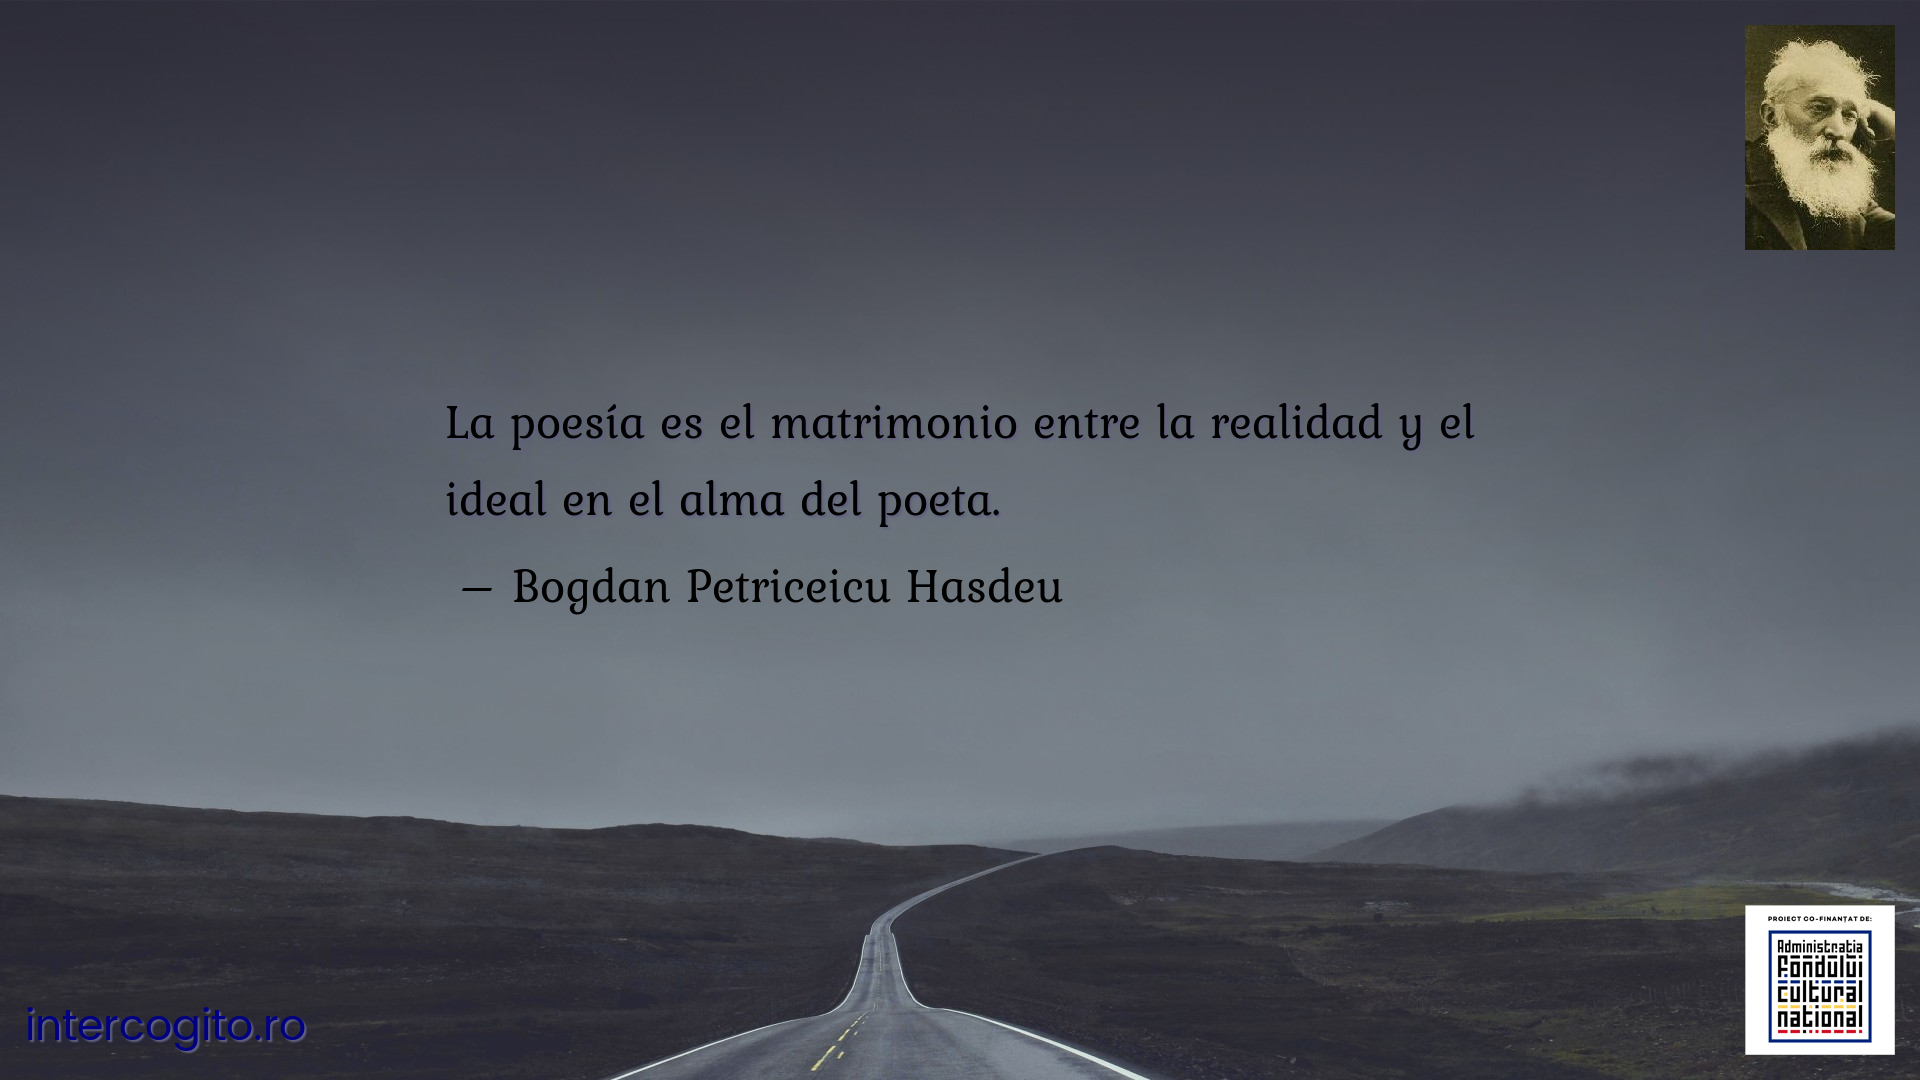 La poesía es el matrimonio entre la realidad y el ideal en el alma del poeta.